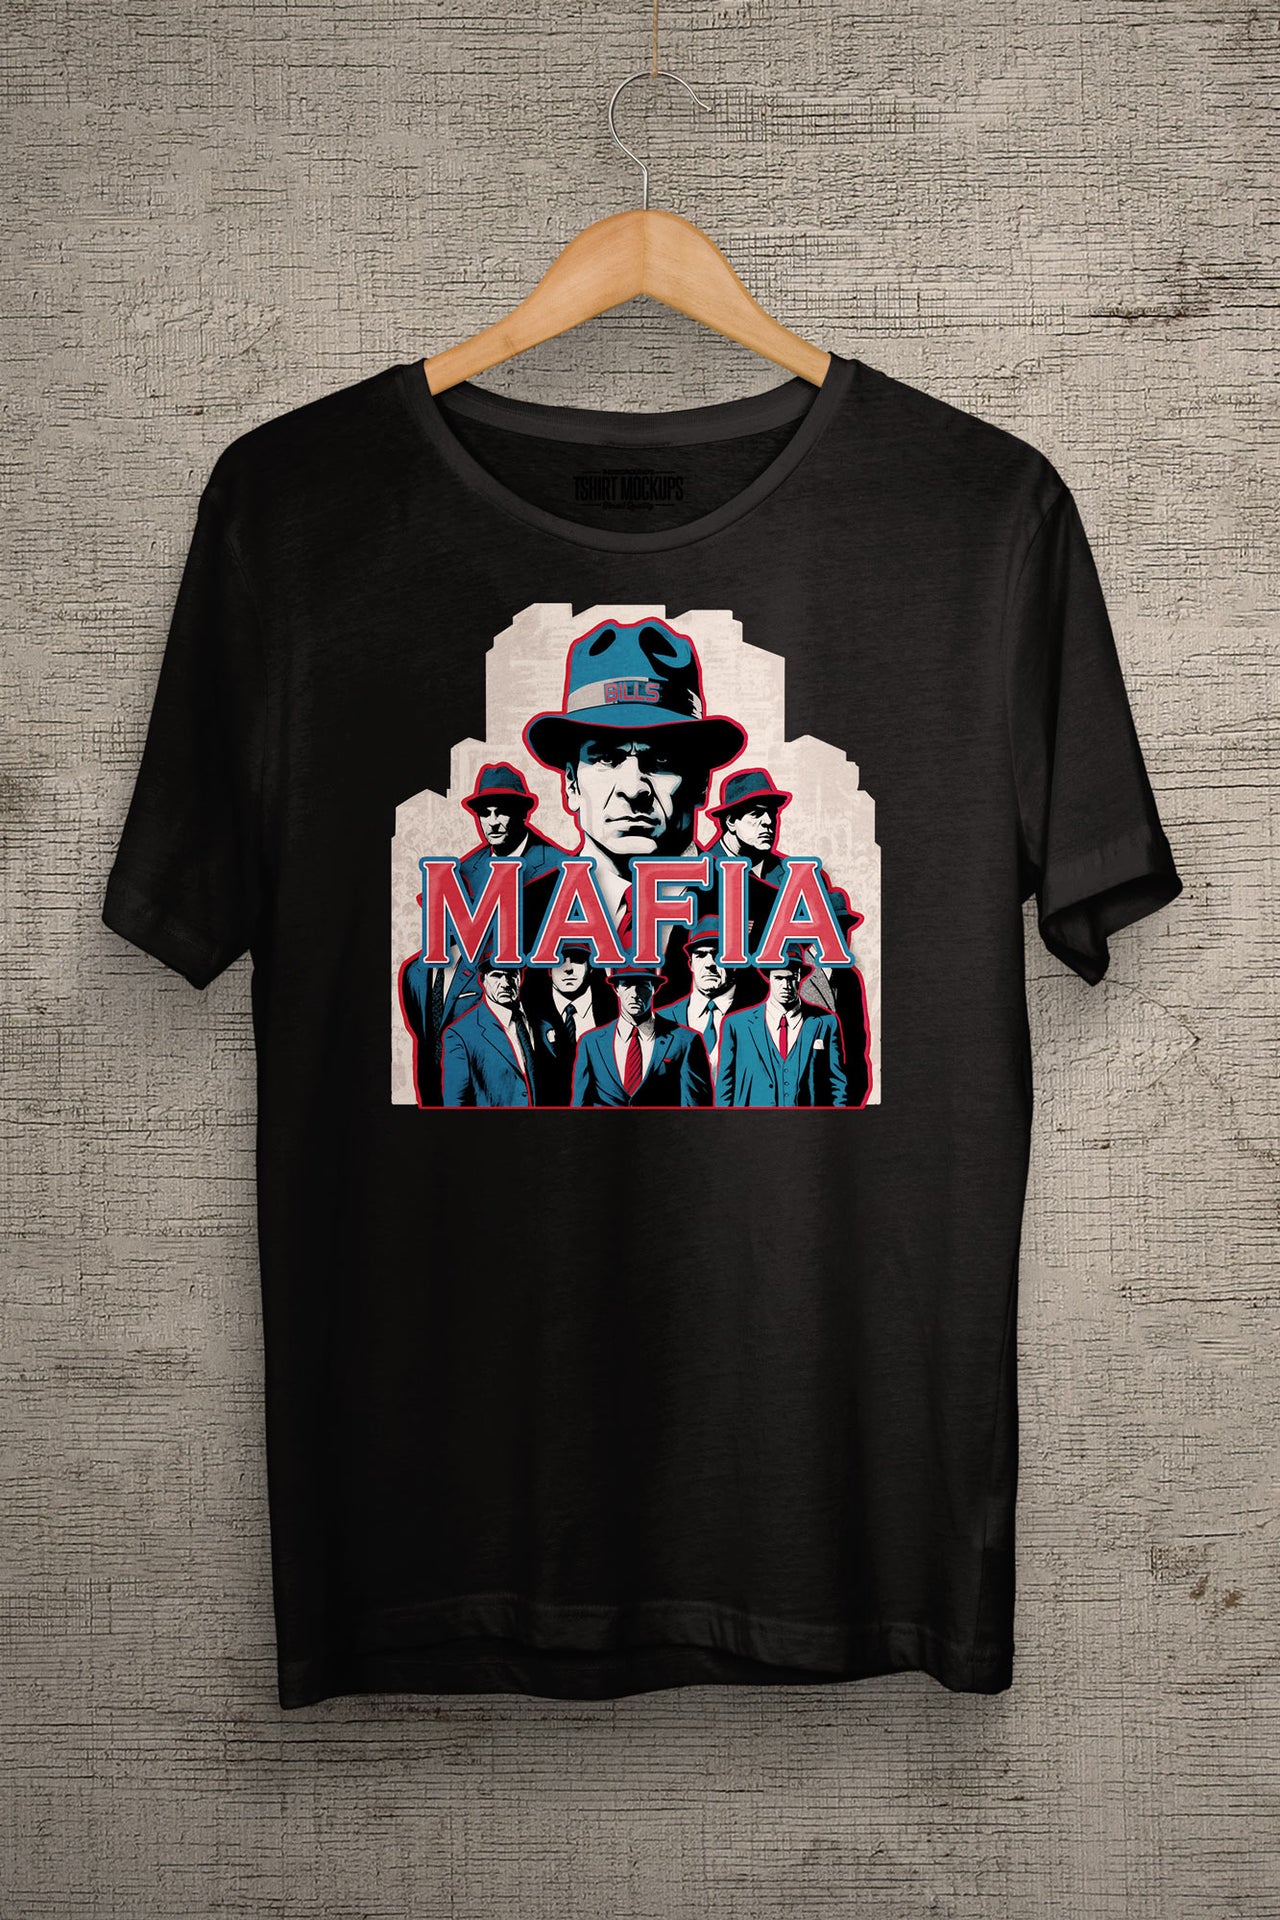 Bills Mafia Posse T-Shirt